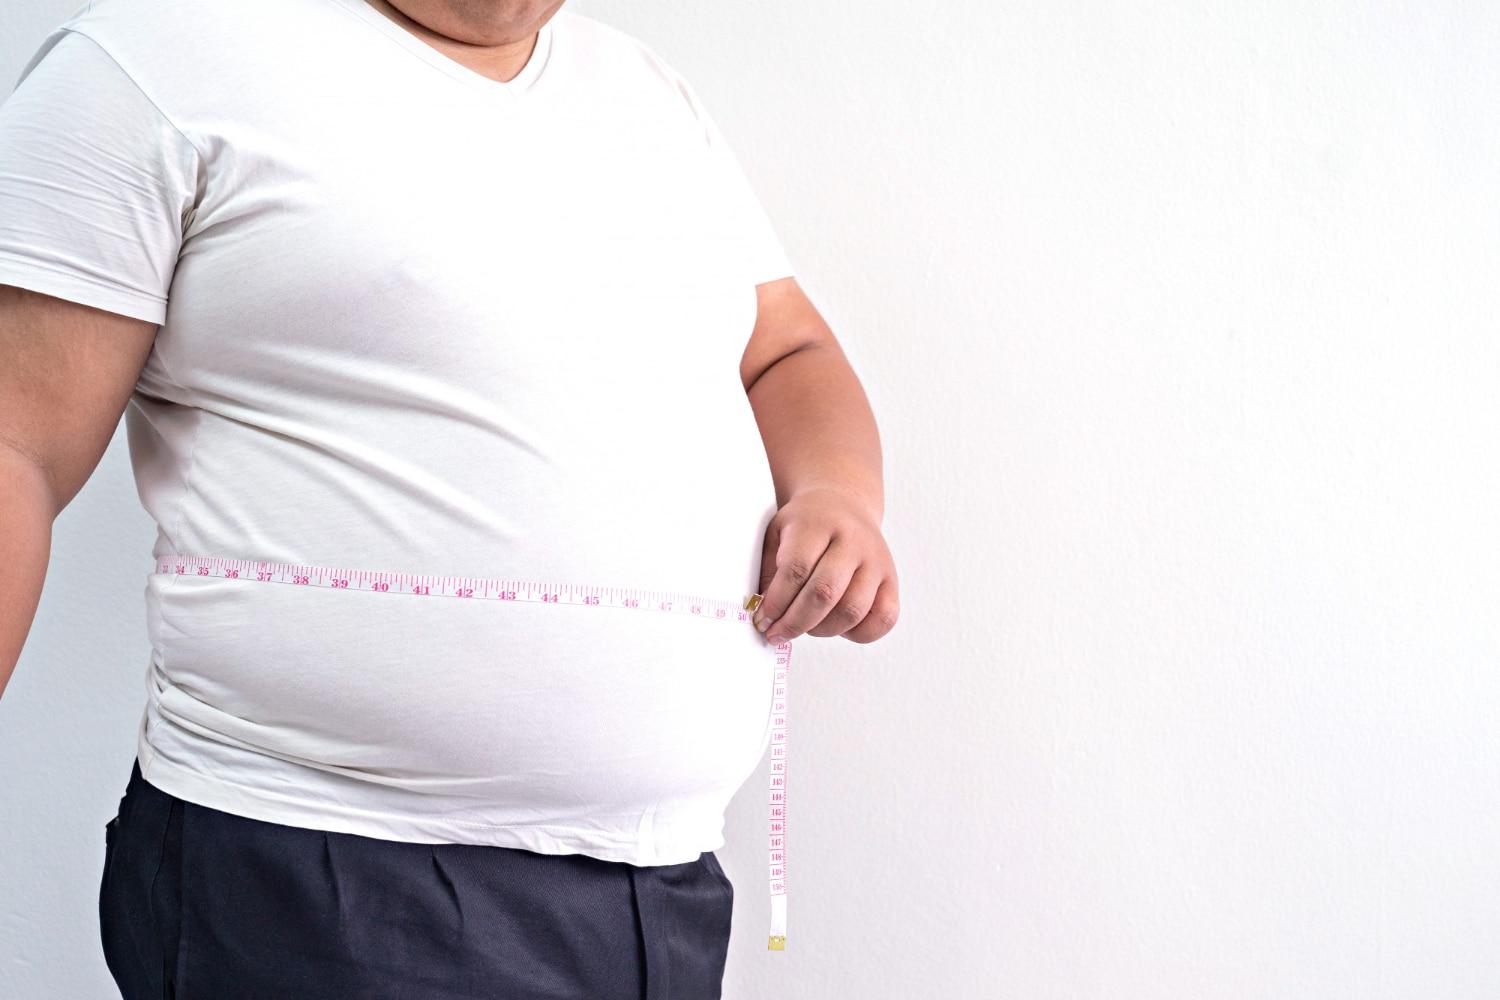 هل زيادة الوزن تؤثر على الإنجاب؟